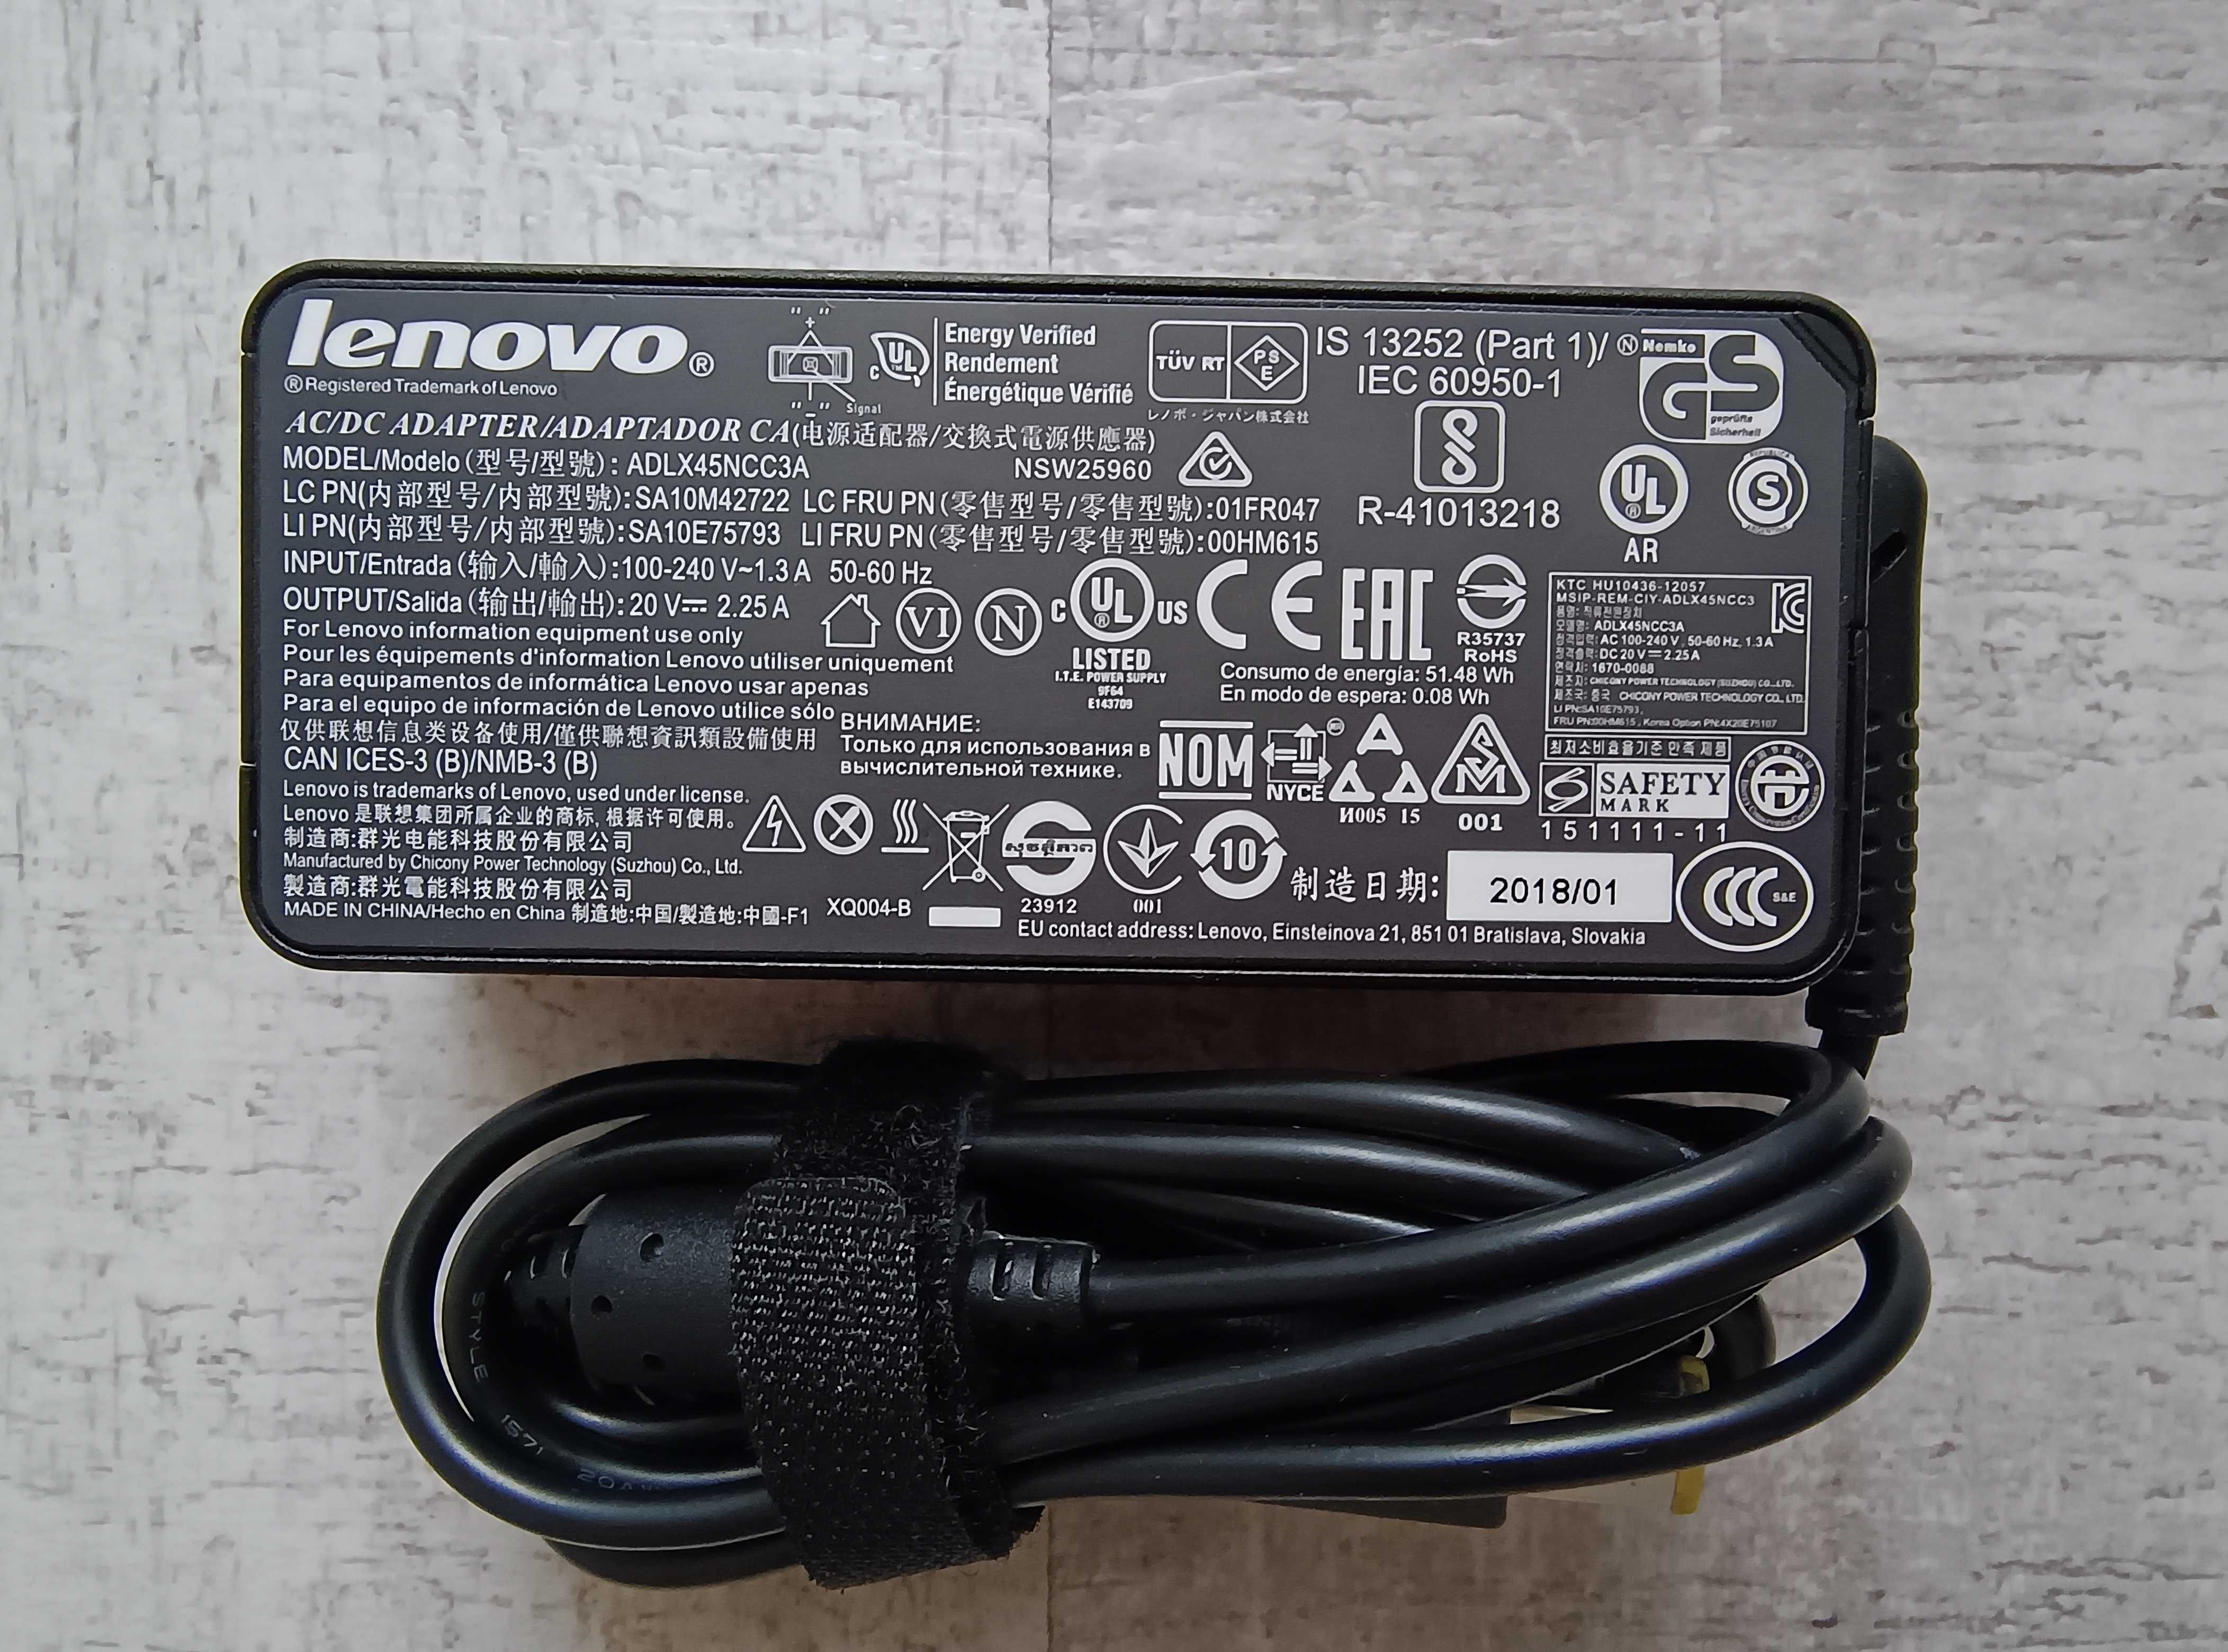 Încărcător original Lenovo 45W 2,2A. Model ADLX45NCC3A. Impecabil!